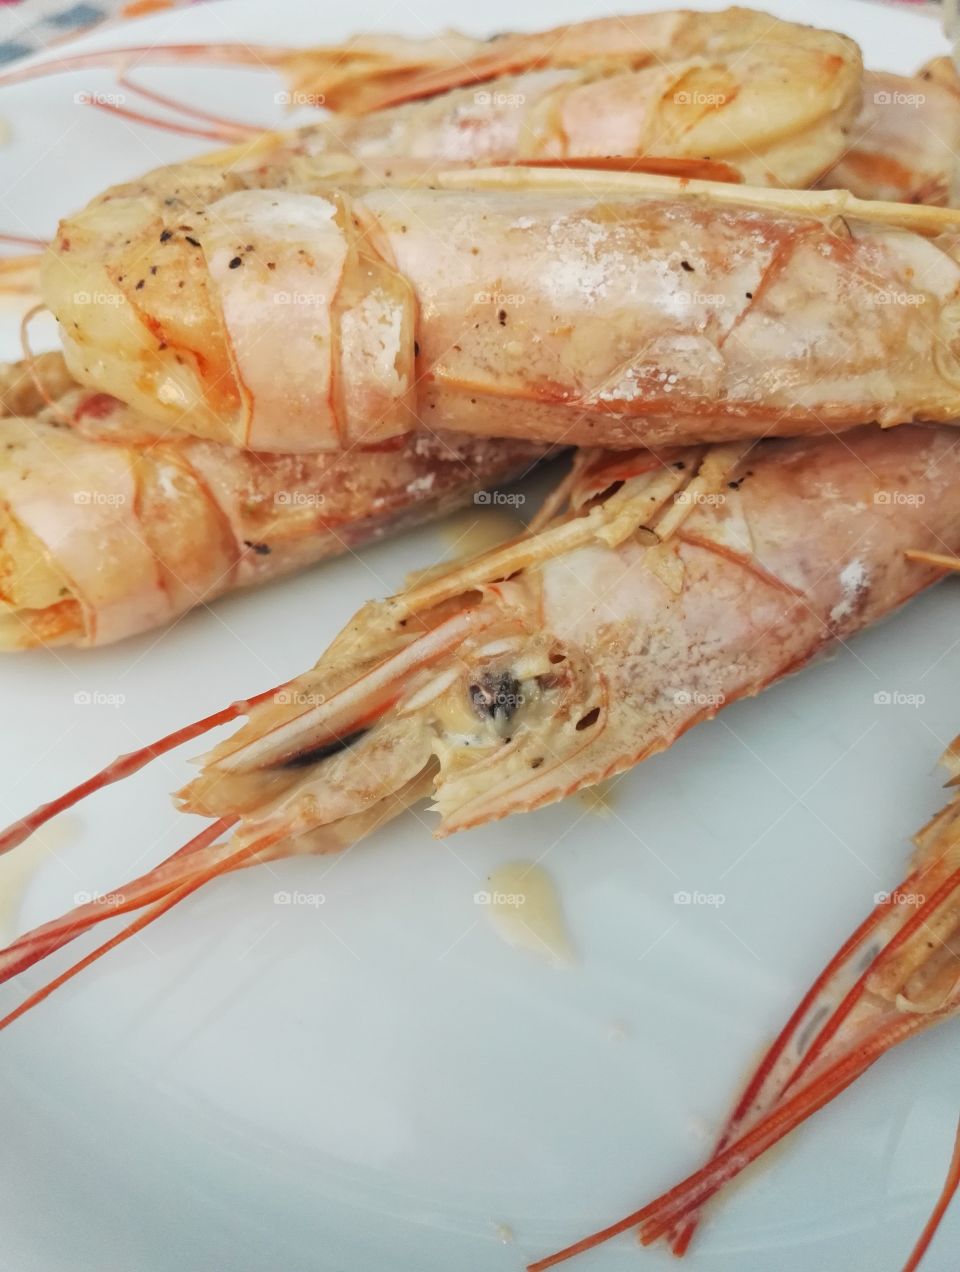 shrimps closeup